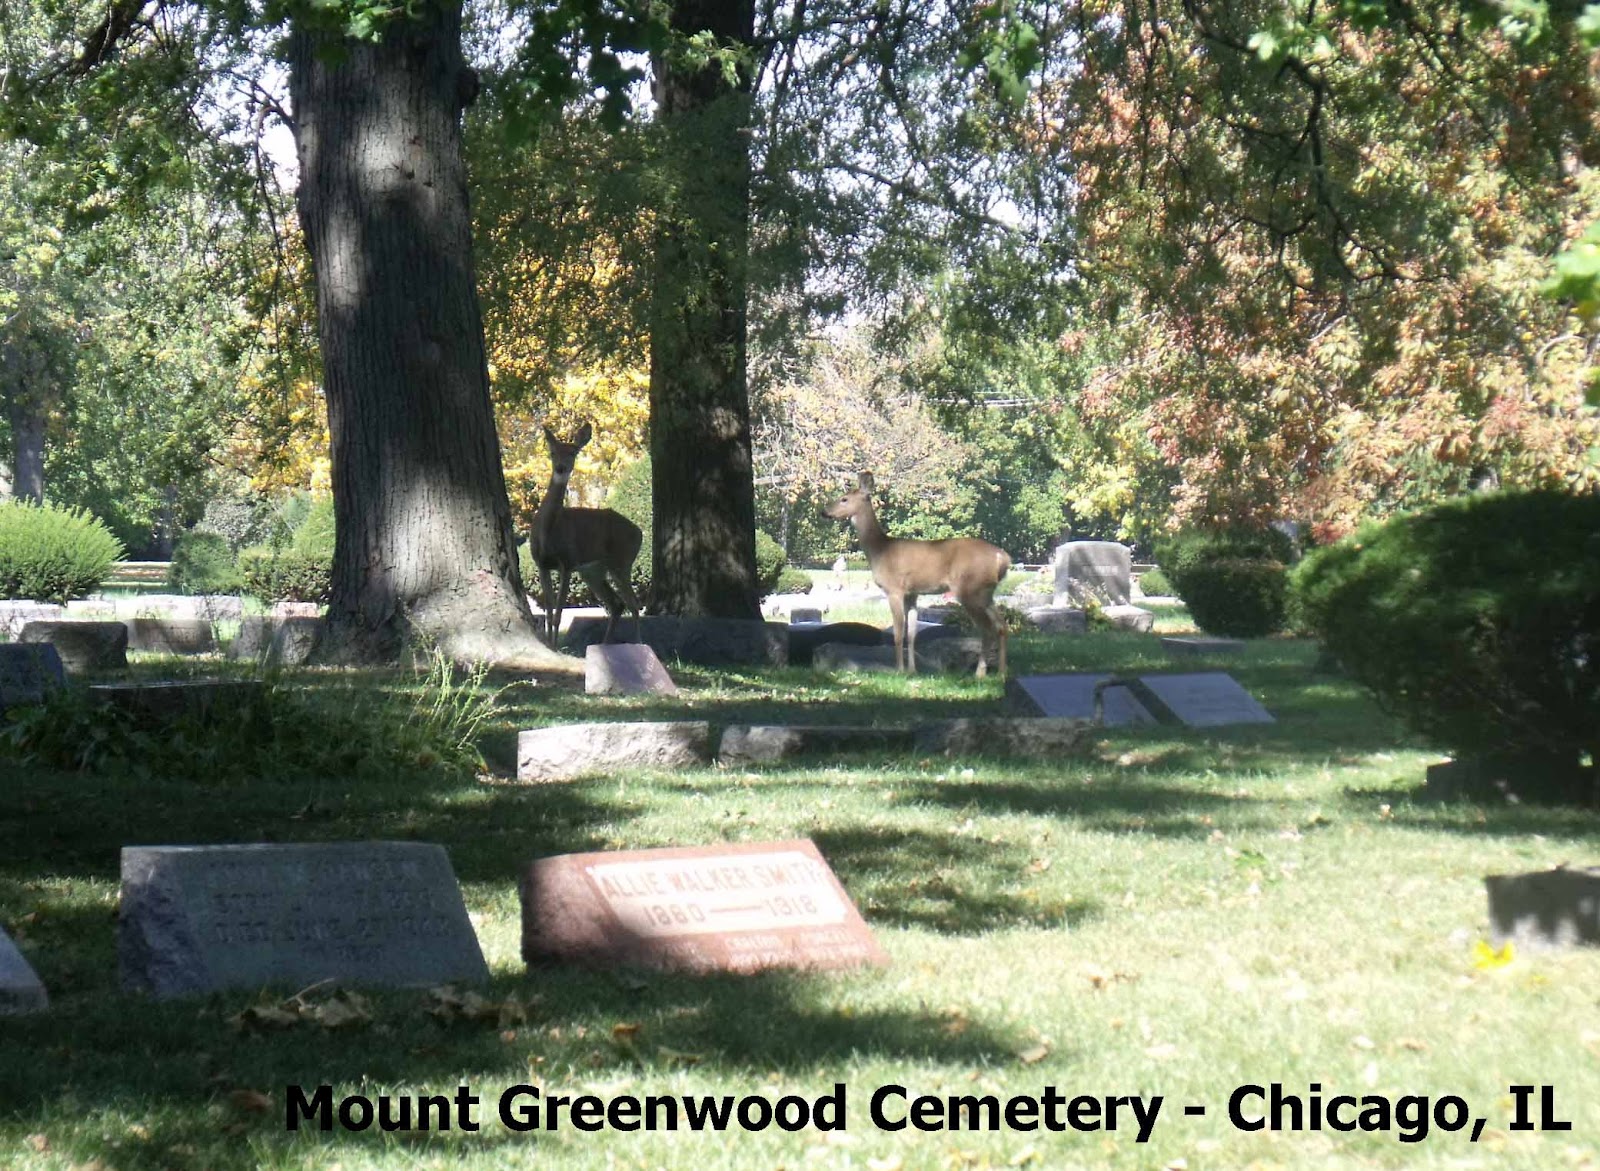 Cemetery today (10/2/2012)